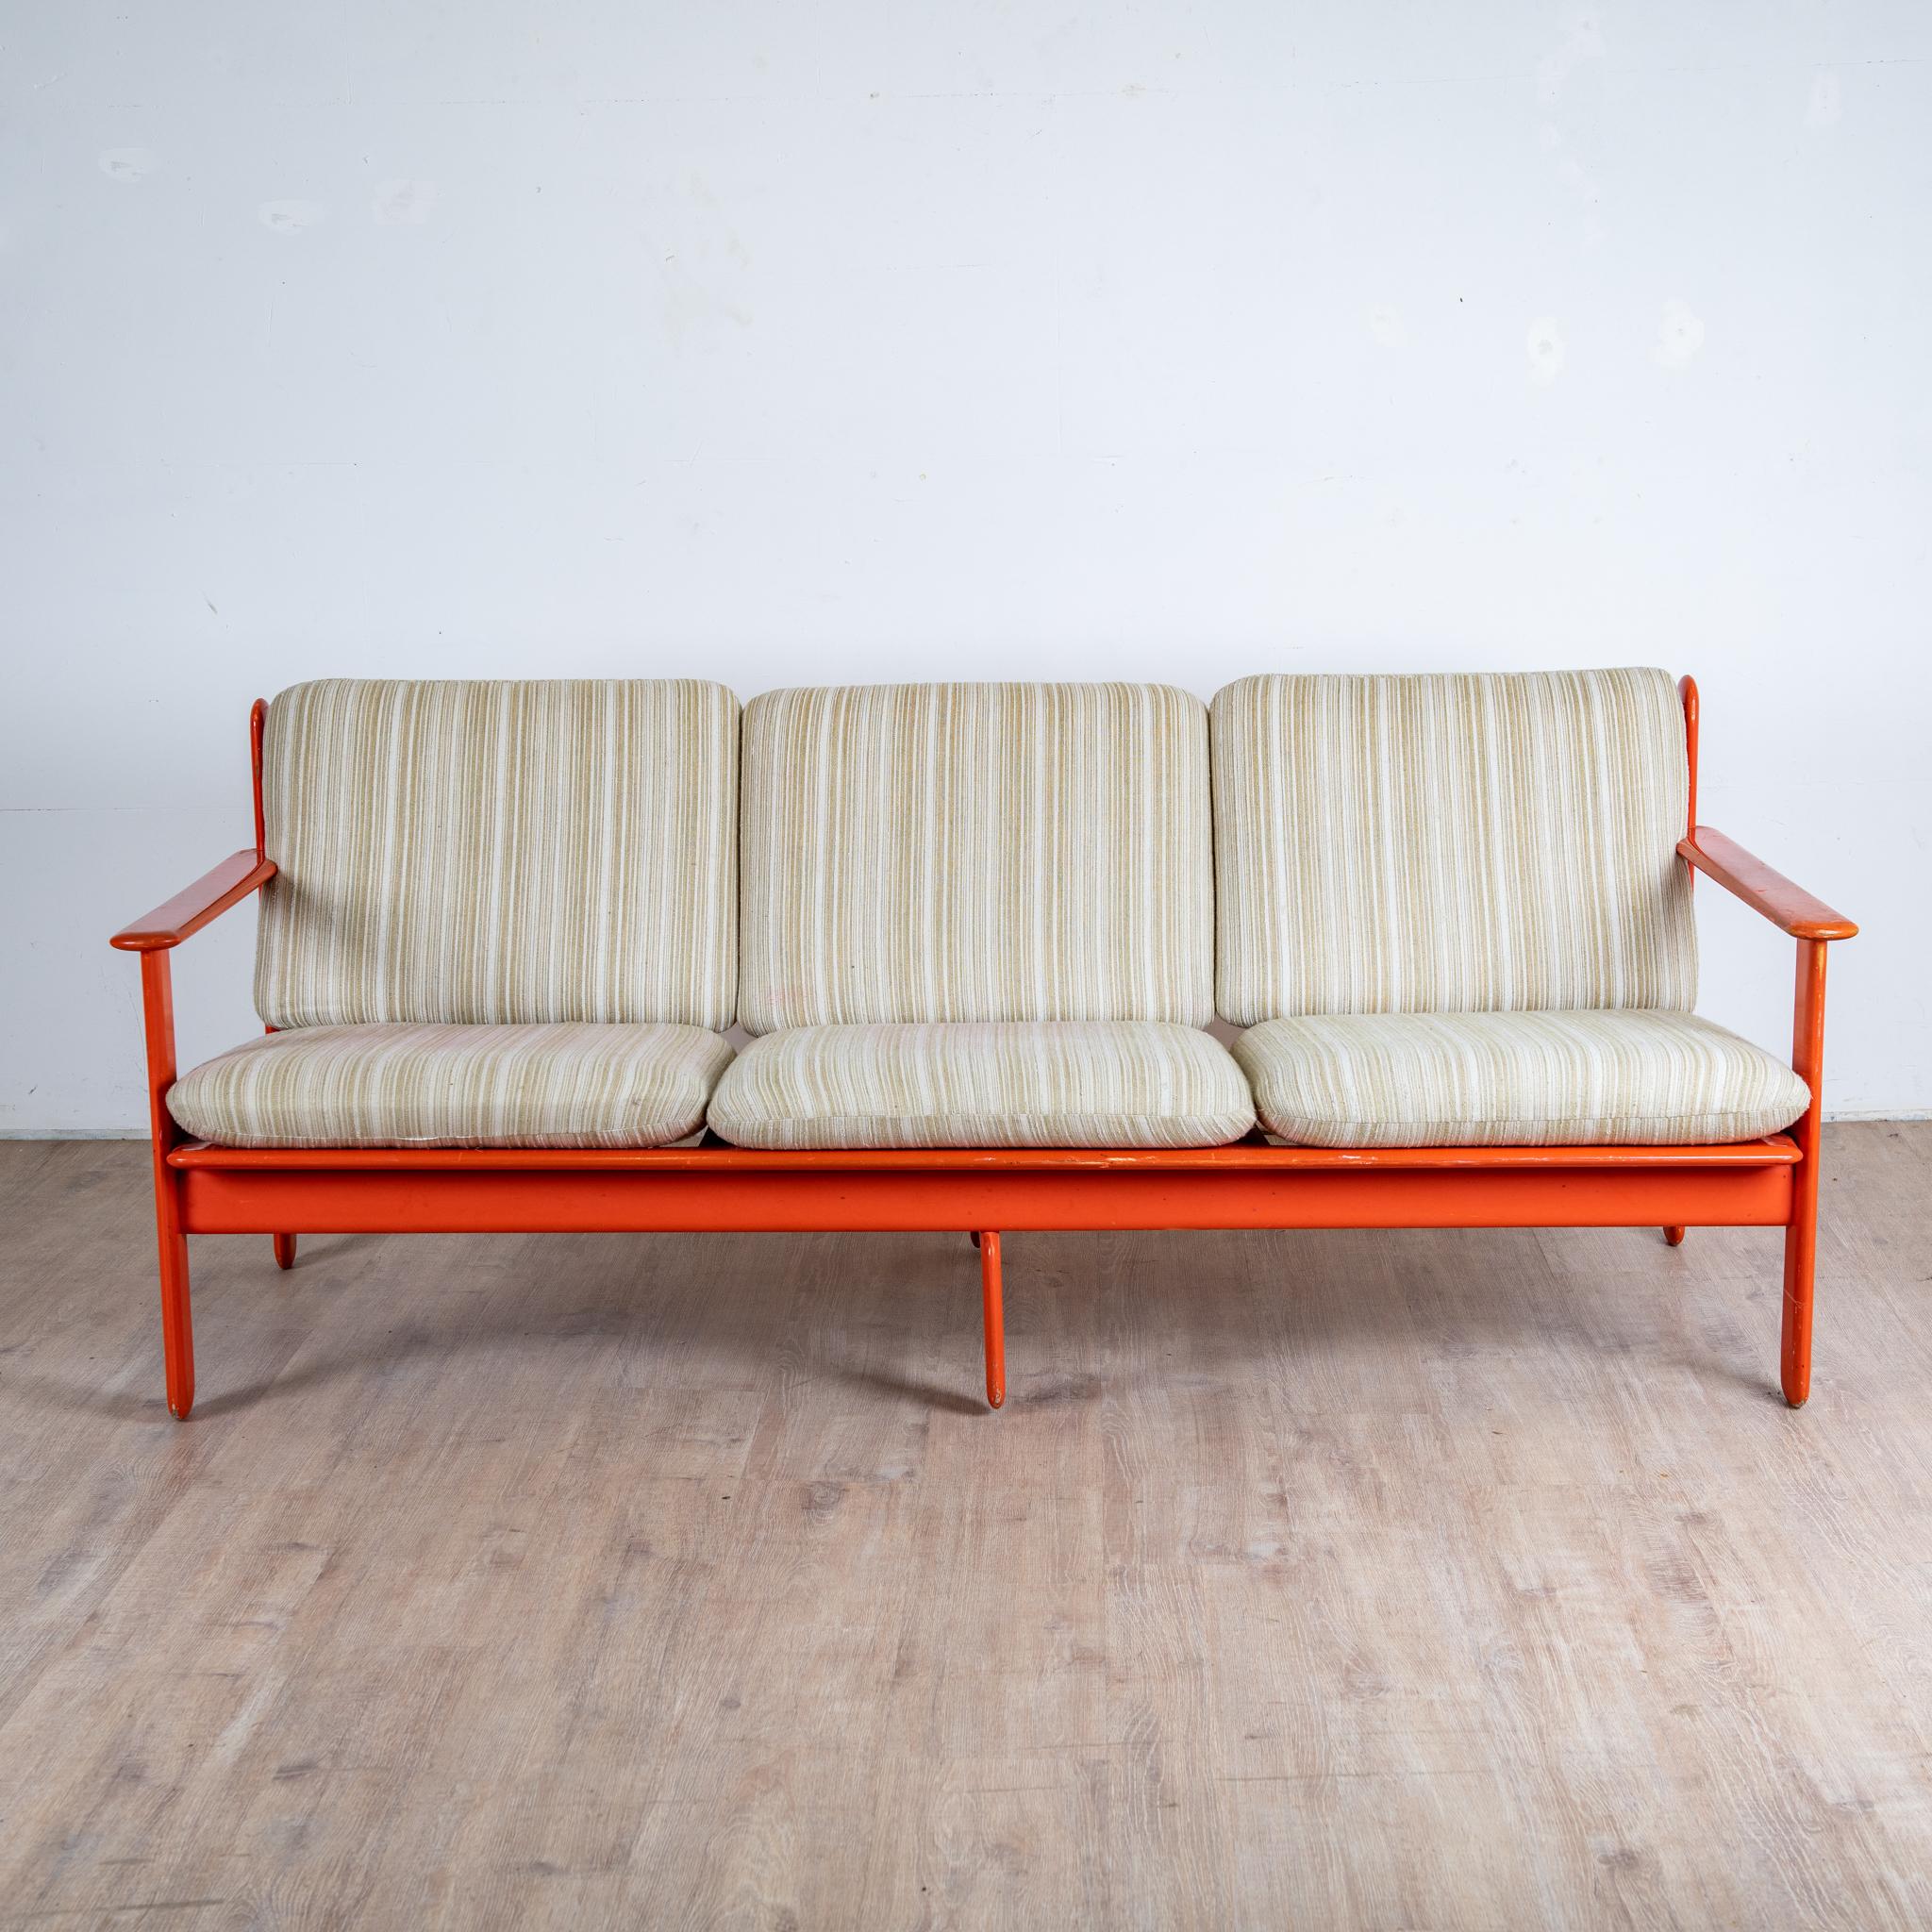 Canapé 3 places en bois laqué orange, fabriqué en Italie, 1970

Struktur aus rot lackiertem Holz, Coussin d'assise aus schaumigem Coton d'origine.

hauteur 75 cm hauteur assise 40 cm longueur 190 profondeur 80 cm